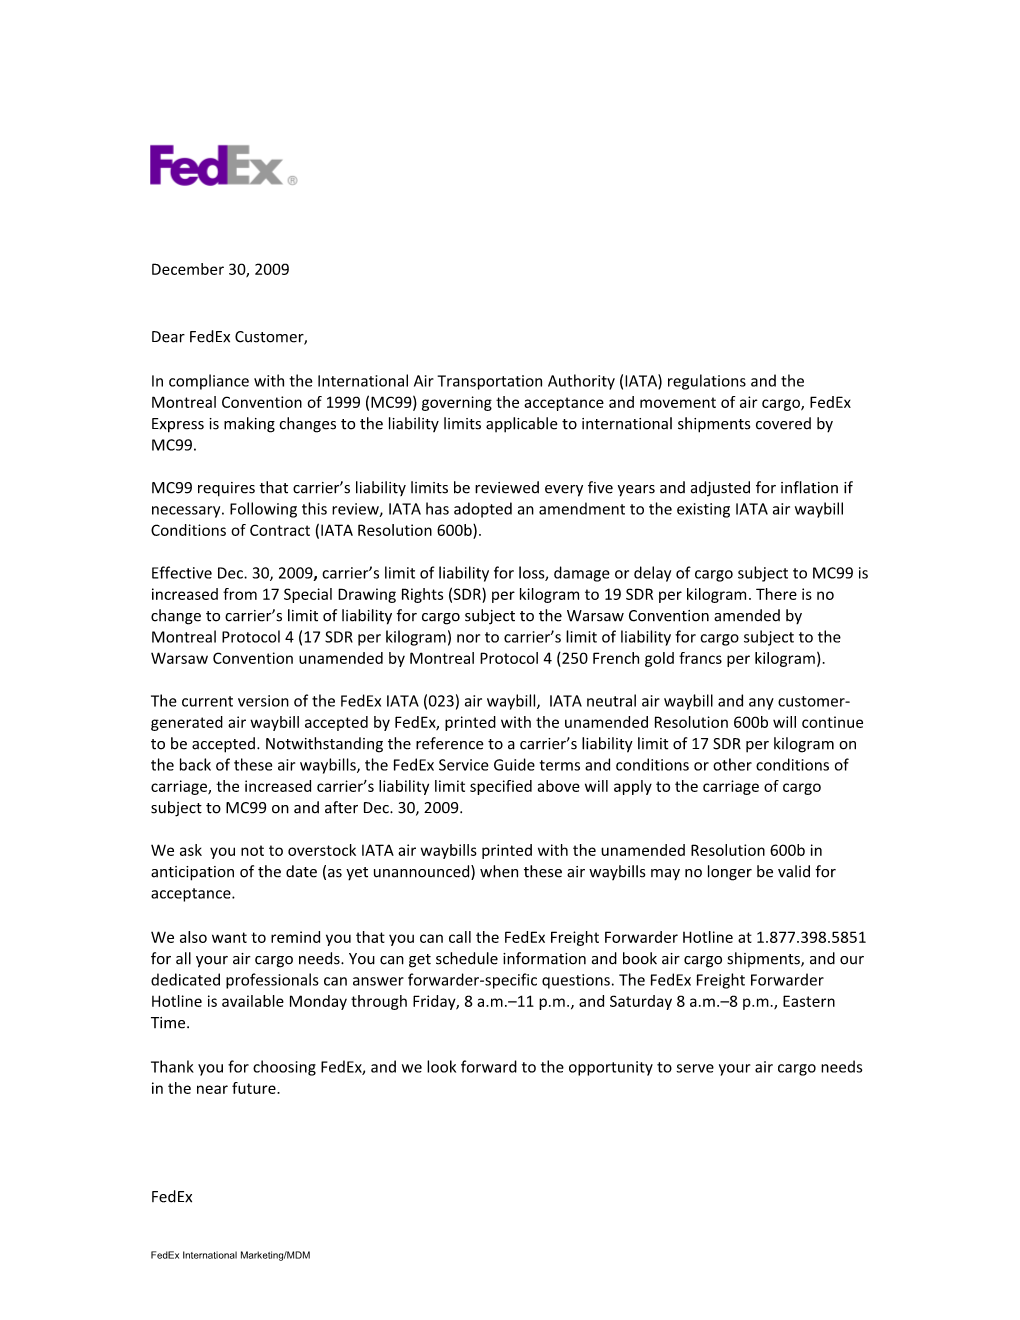 Dear Fedex Customer